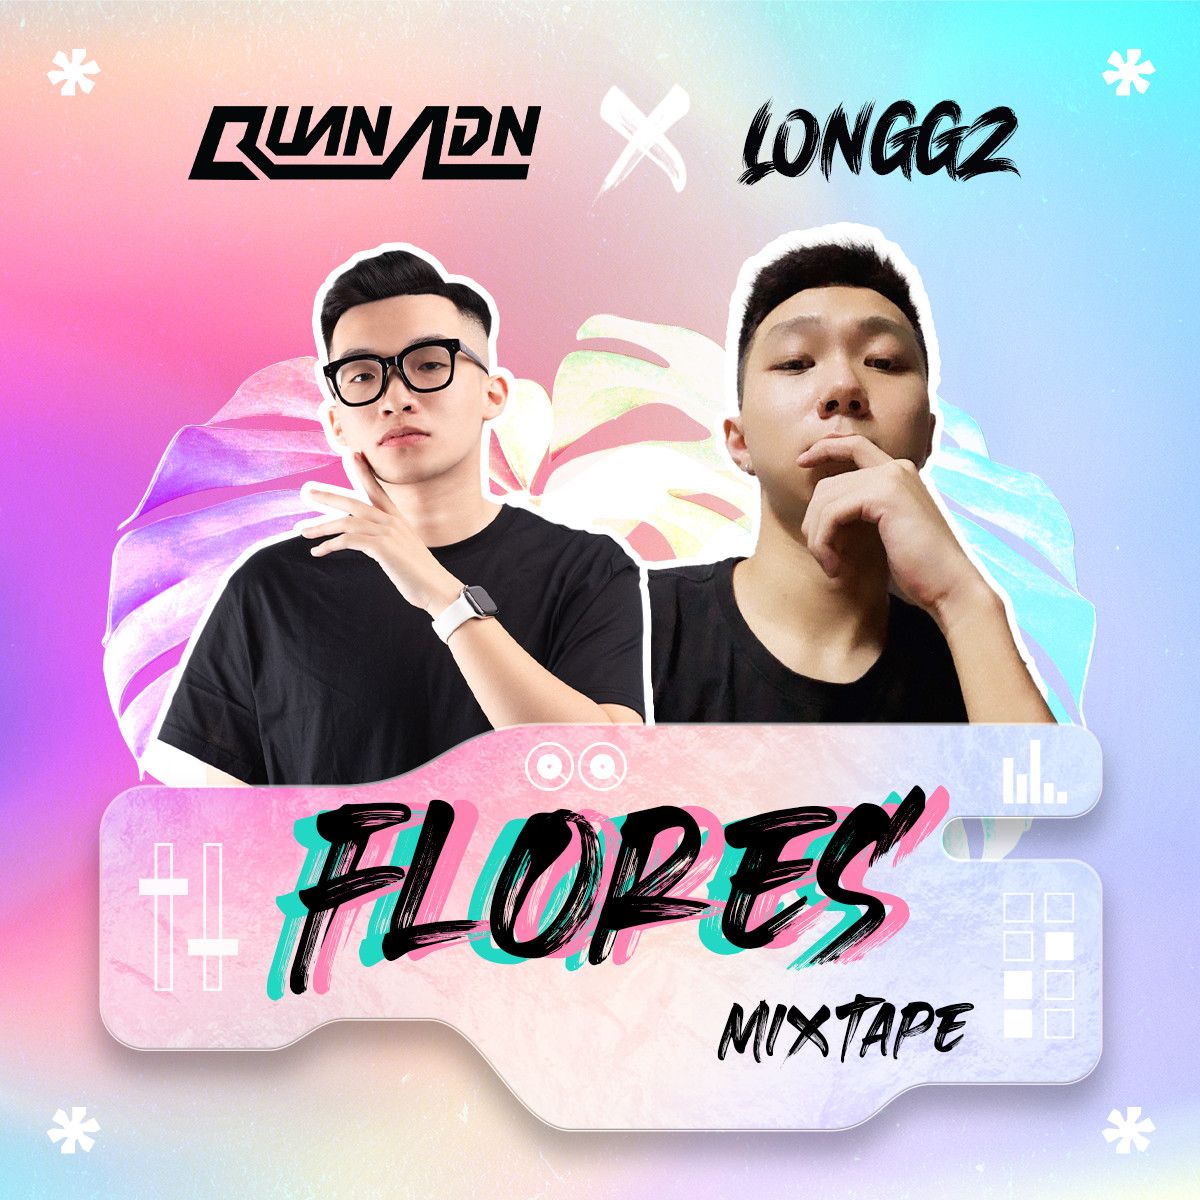 Download Mixtape - Flores by Quan ADN & LONGGZ